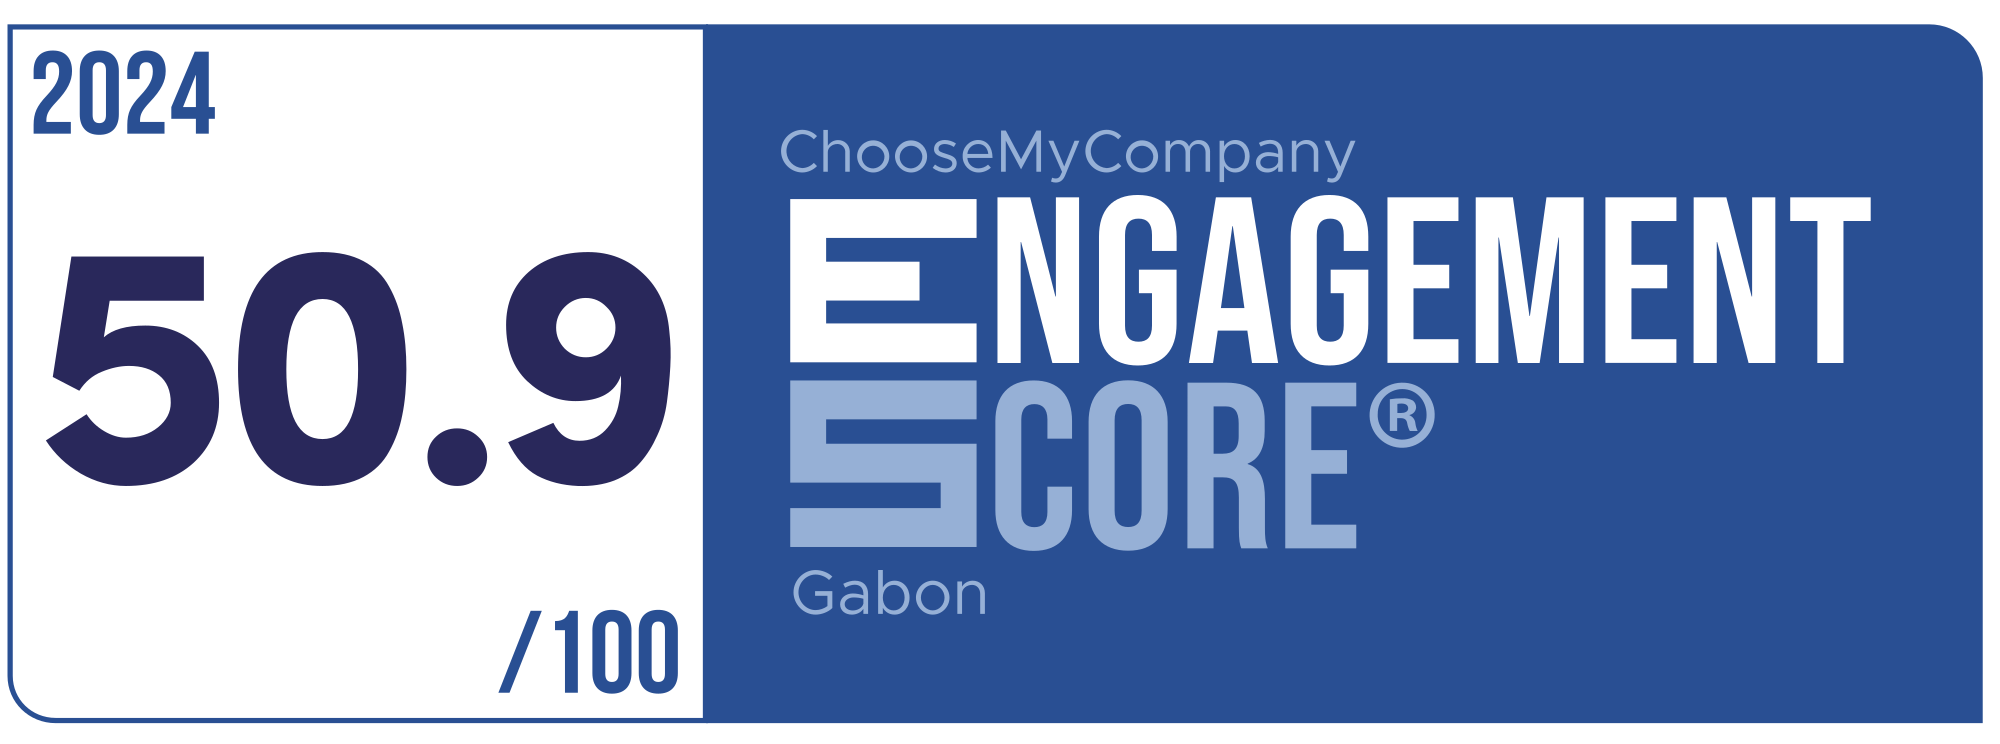 Label Engagement Score 2024 Gabon